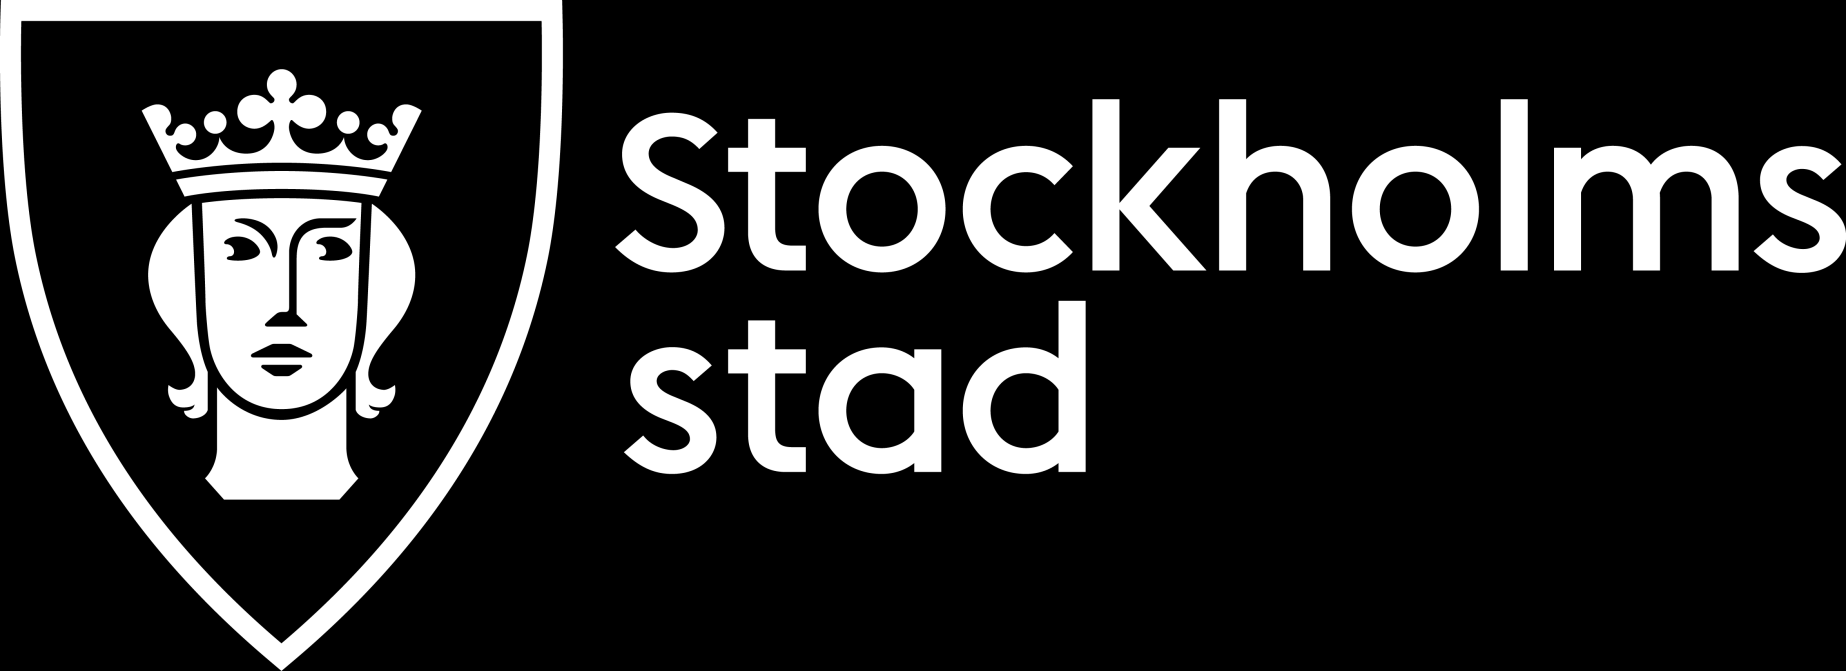 Stockholm stads vision Vårt